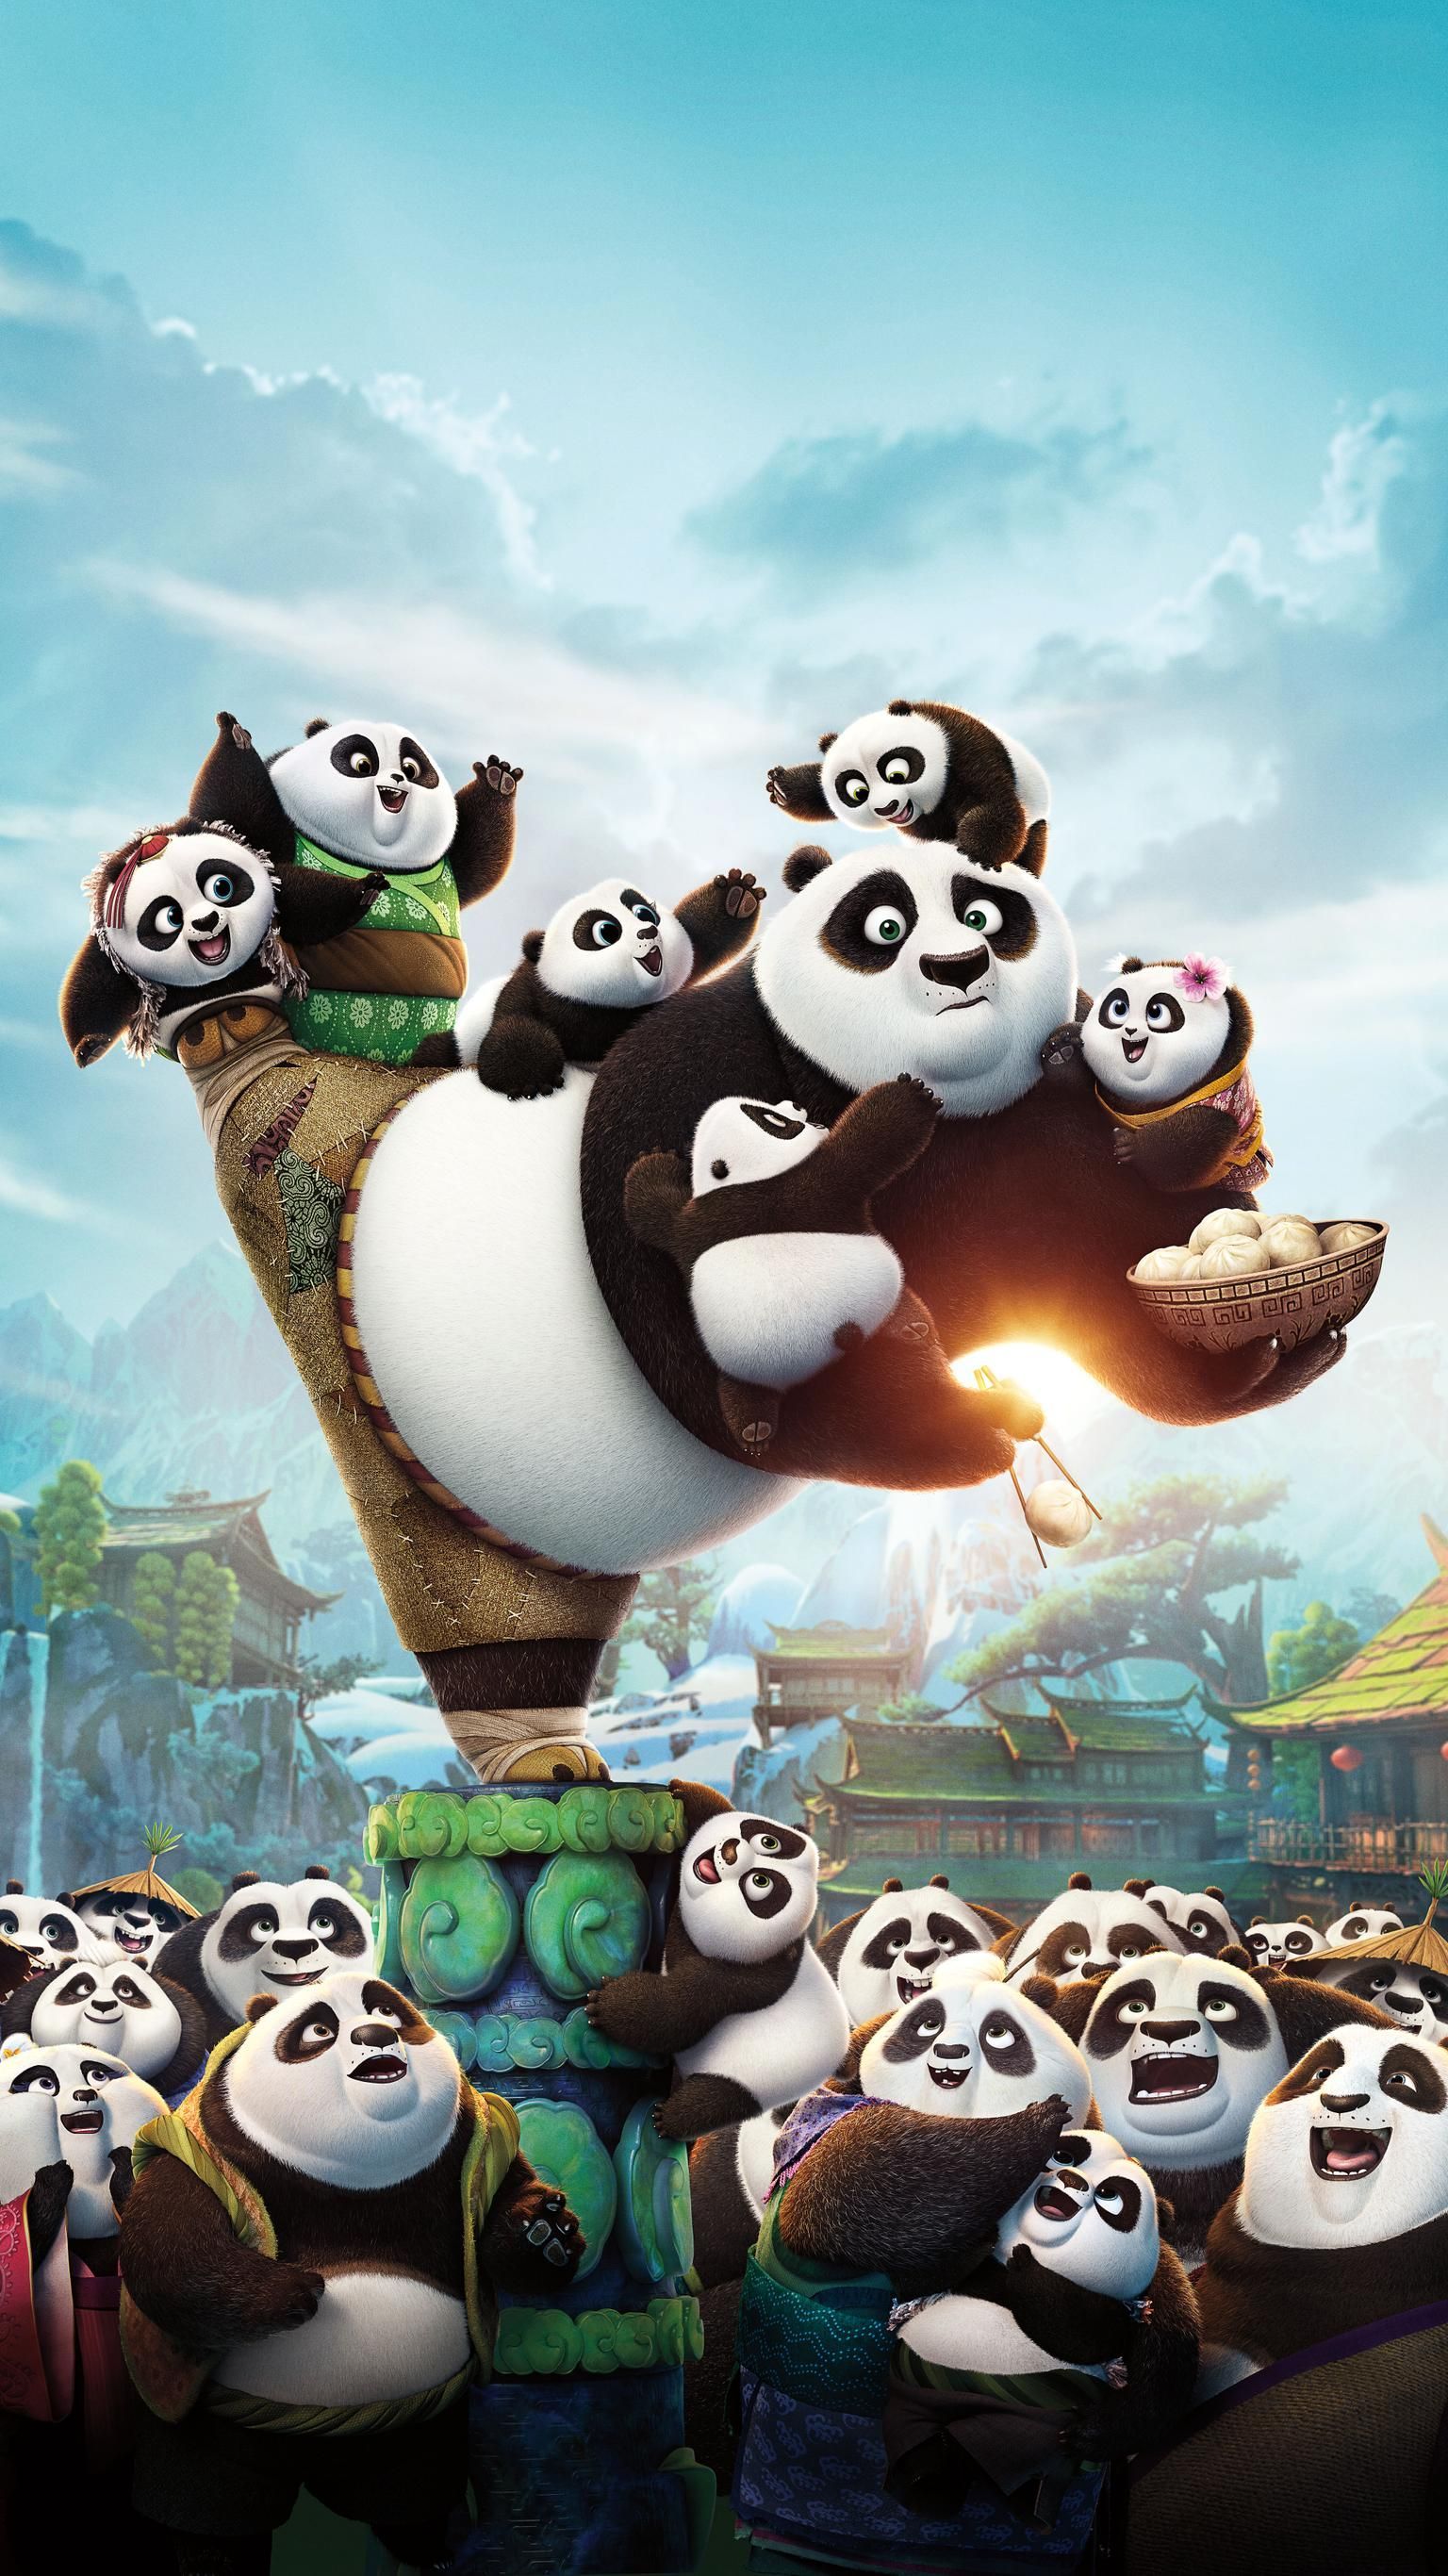 Kung Fu Panda 3 (2016) Phone Wallpaper. Moviemania. Kung fu panda Disney wallpaper, Cute disney wallpaper